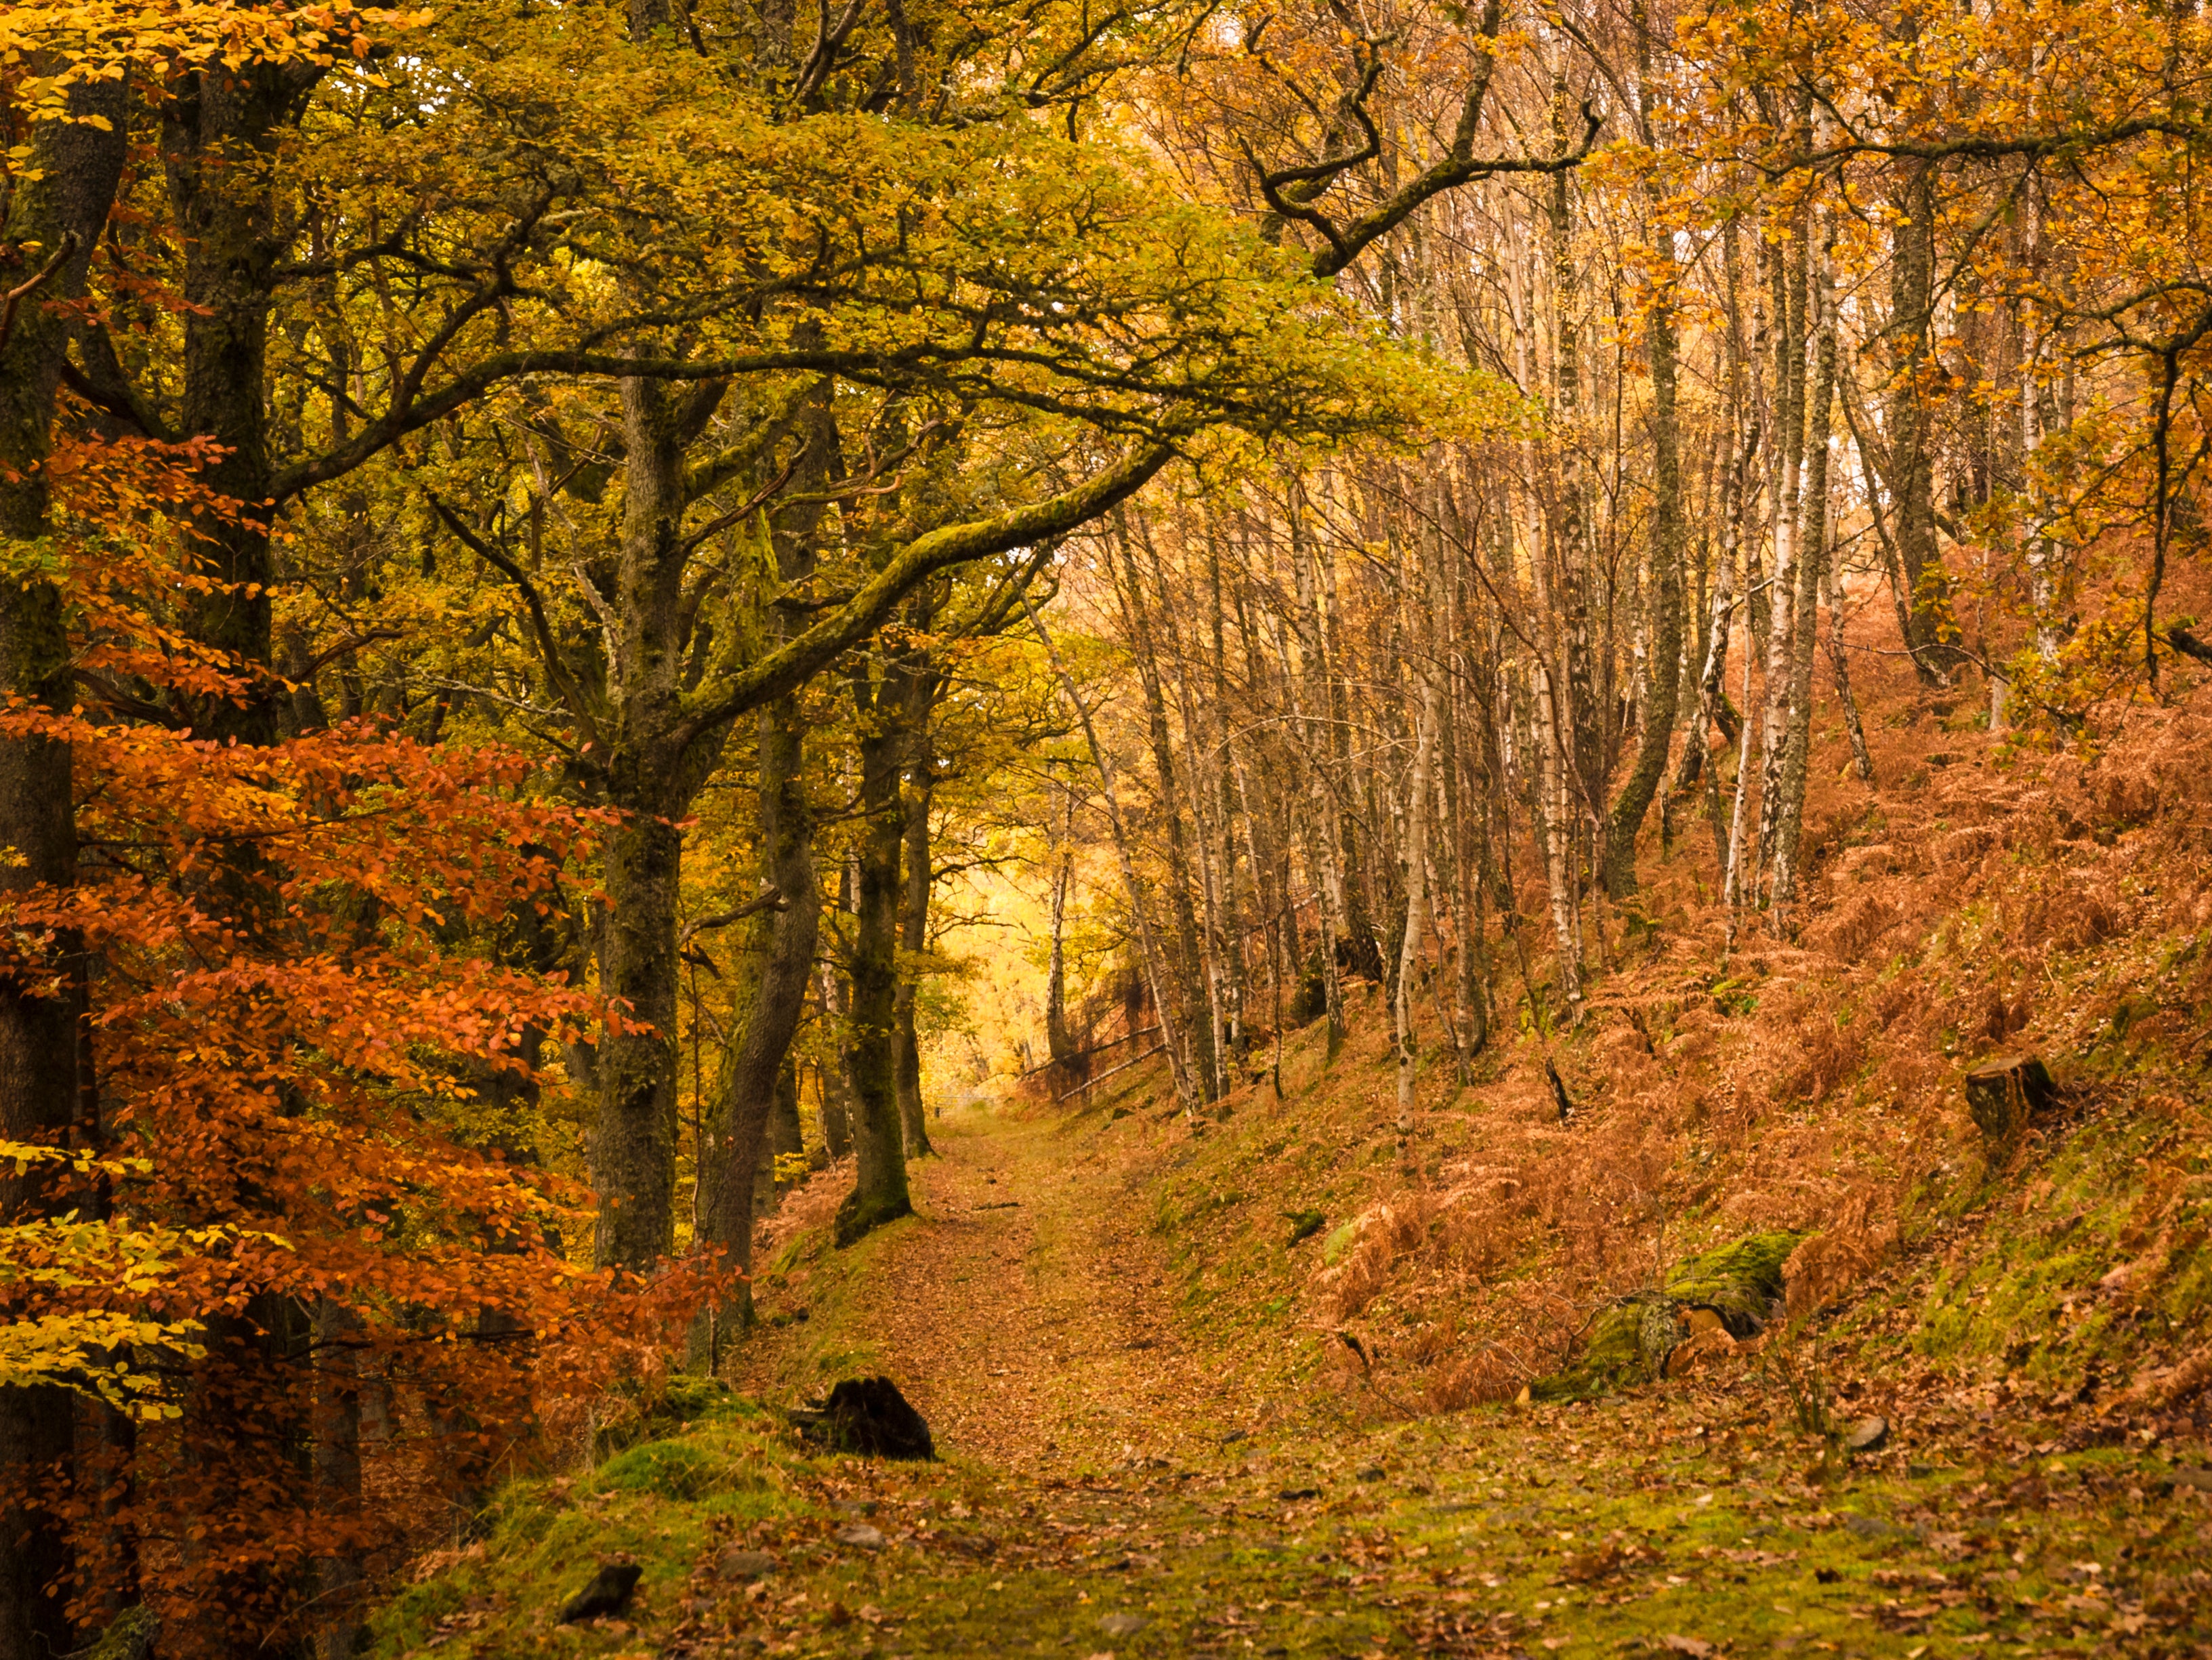 A footpath through a forest in Tayside, Scotland